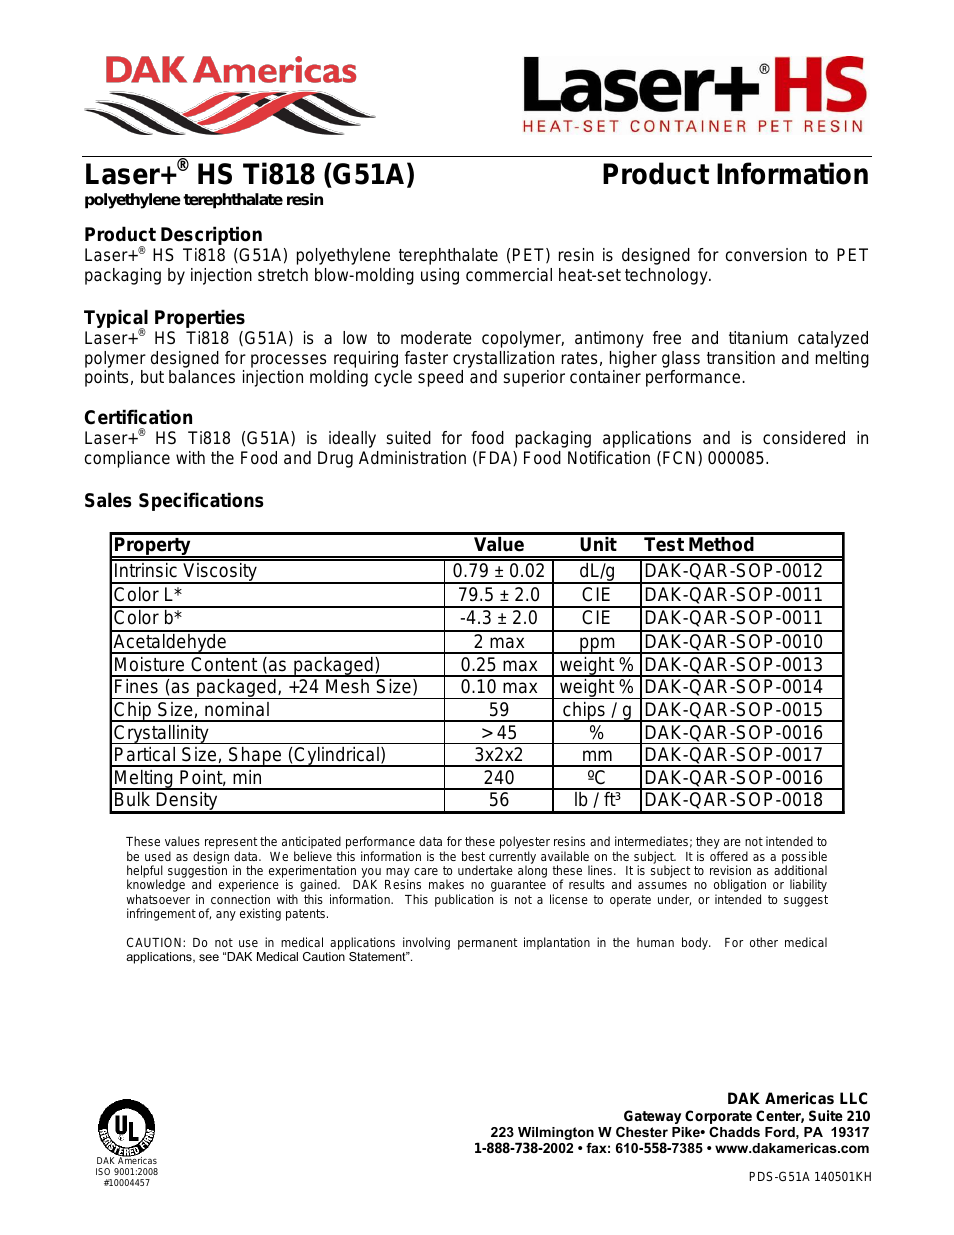 Laser+ HS Ti818 G51A